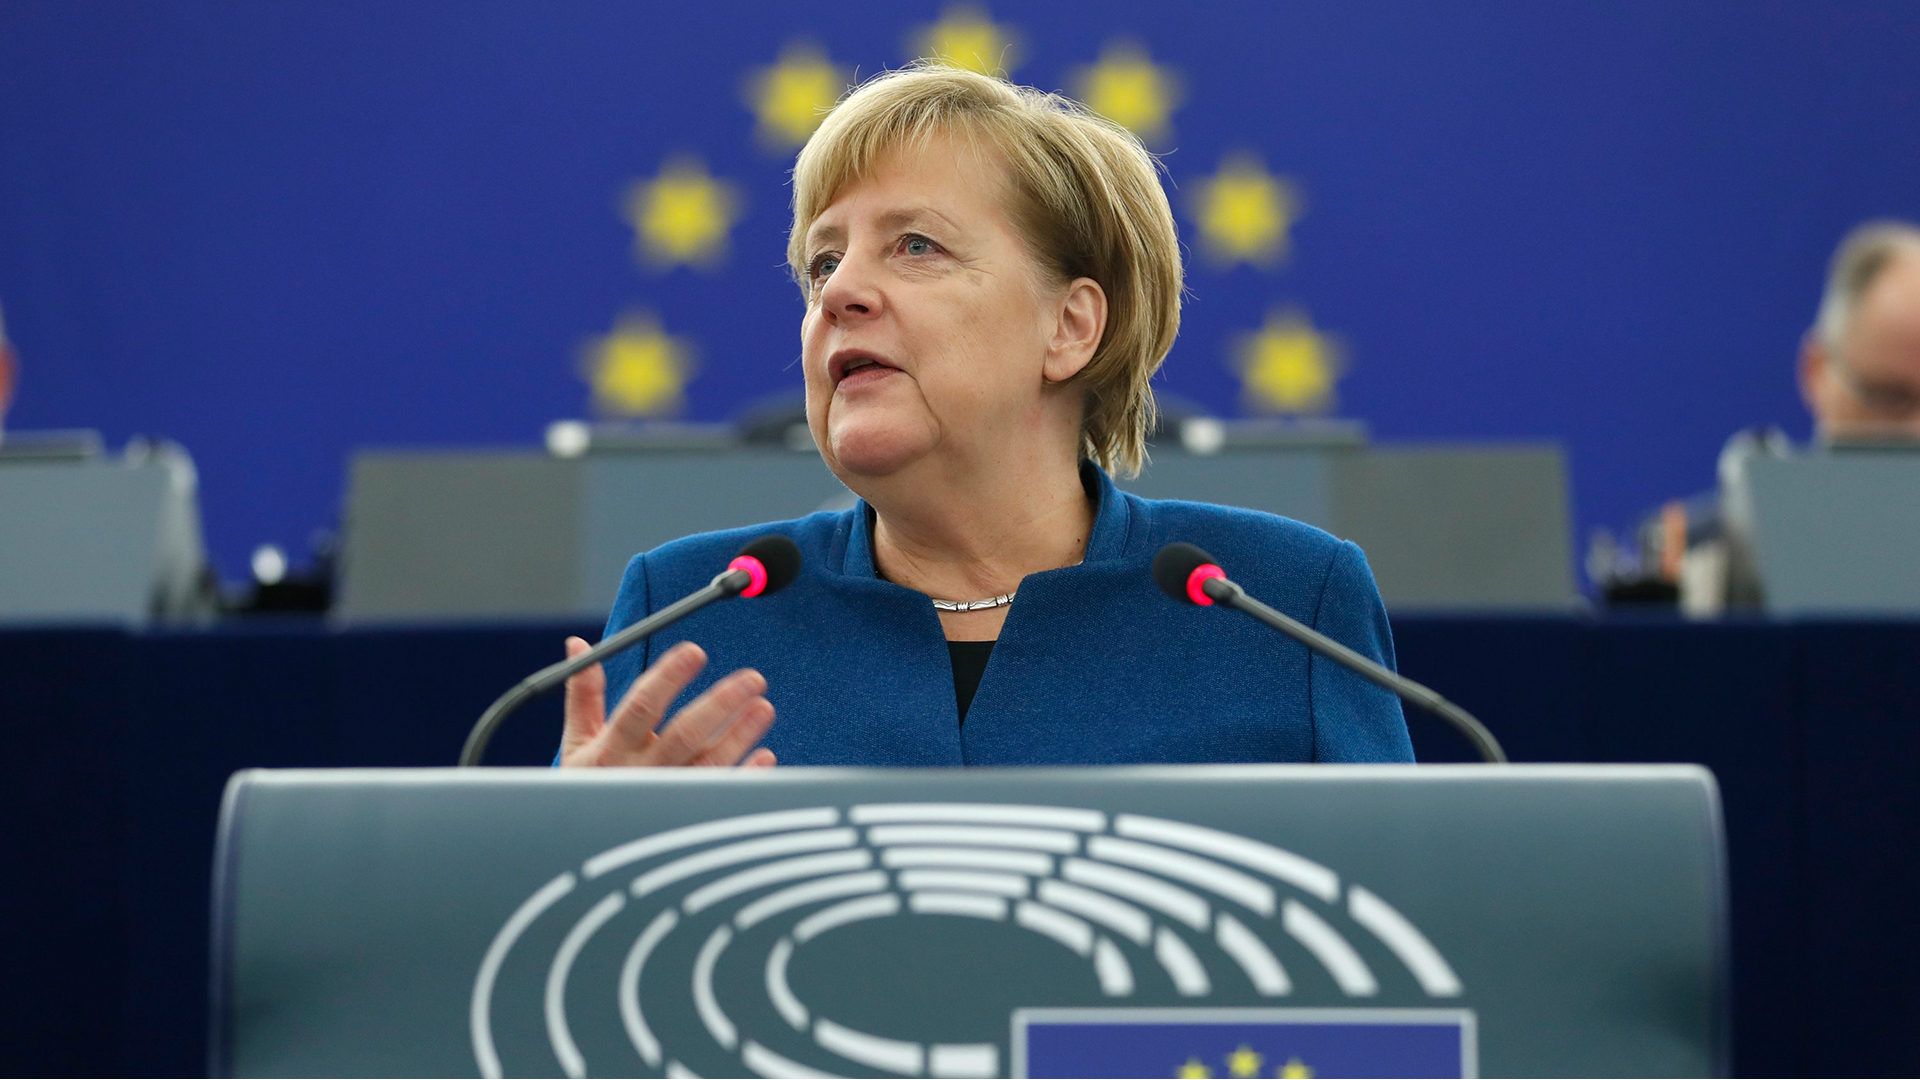 Angela Merkel spricht vor dem EU-Parlament | AP